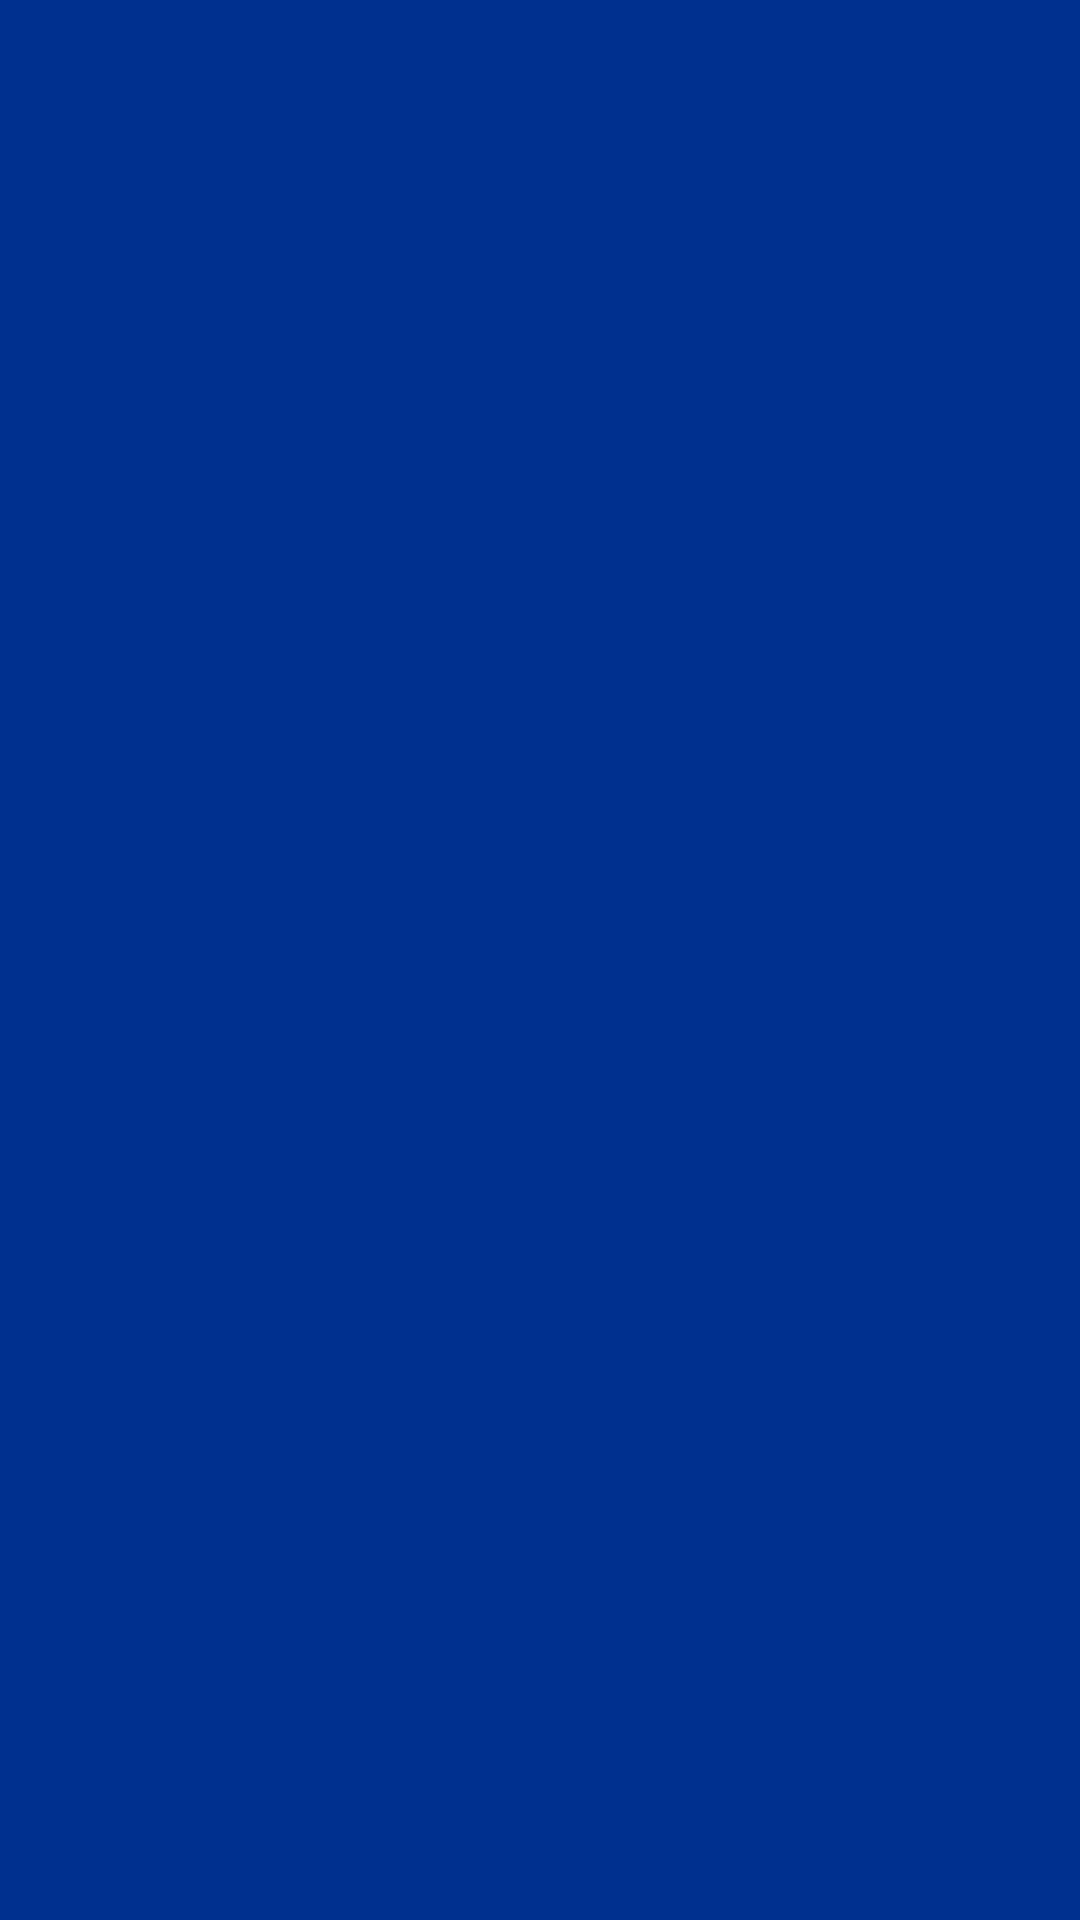 10 Latest All Blue Wallpaper FULL HD 1920×1080 For PC Desktop